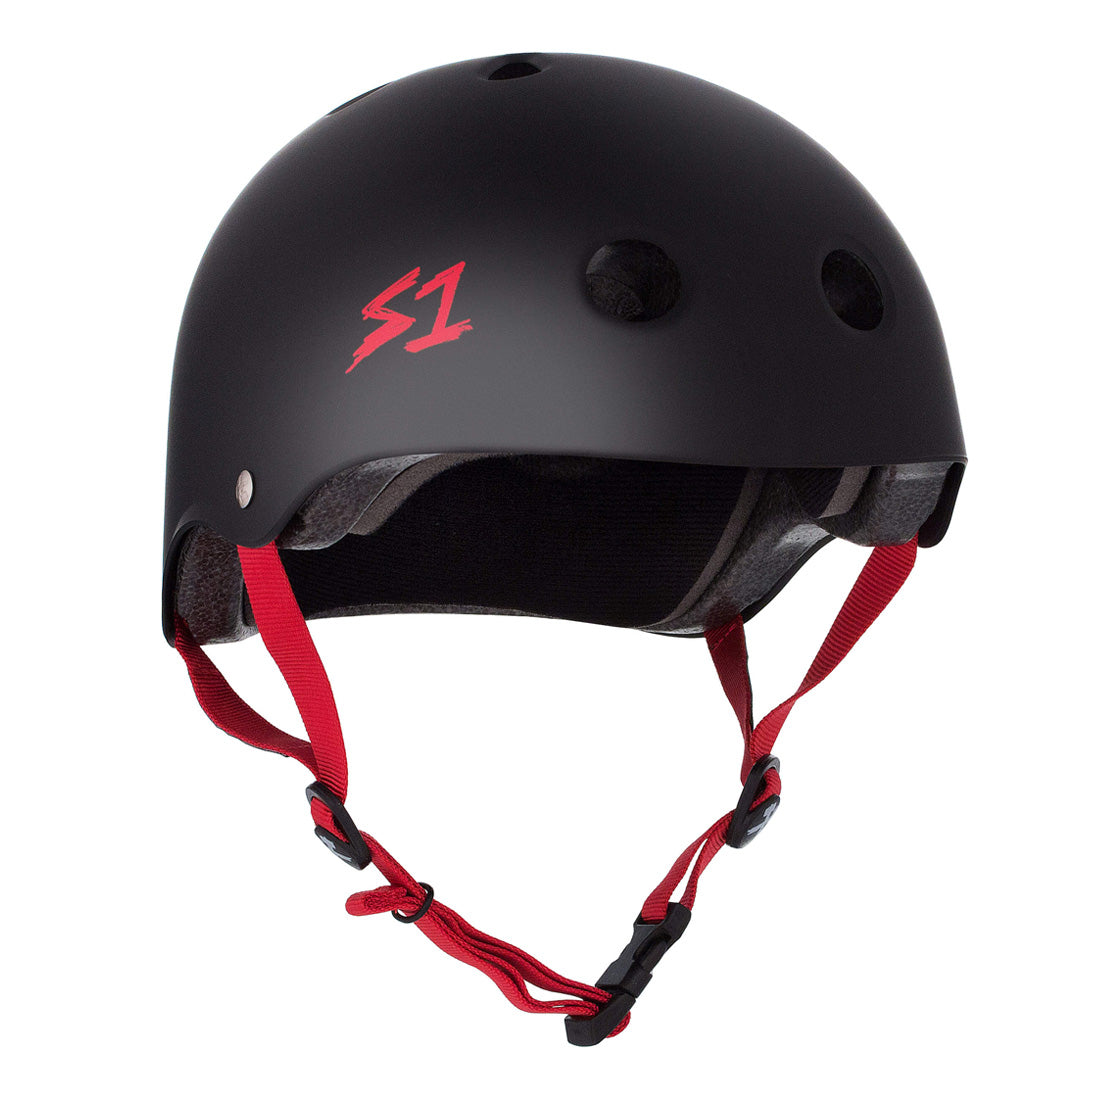 S-One Lifer Helmet - Black/Red Matte Helmets